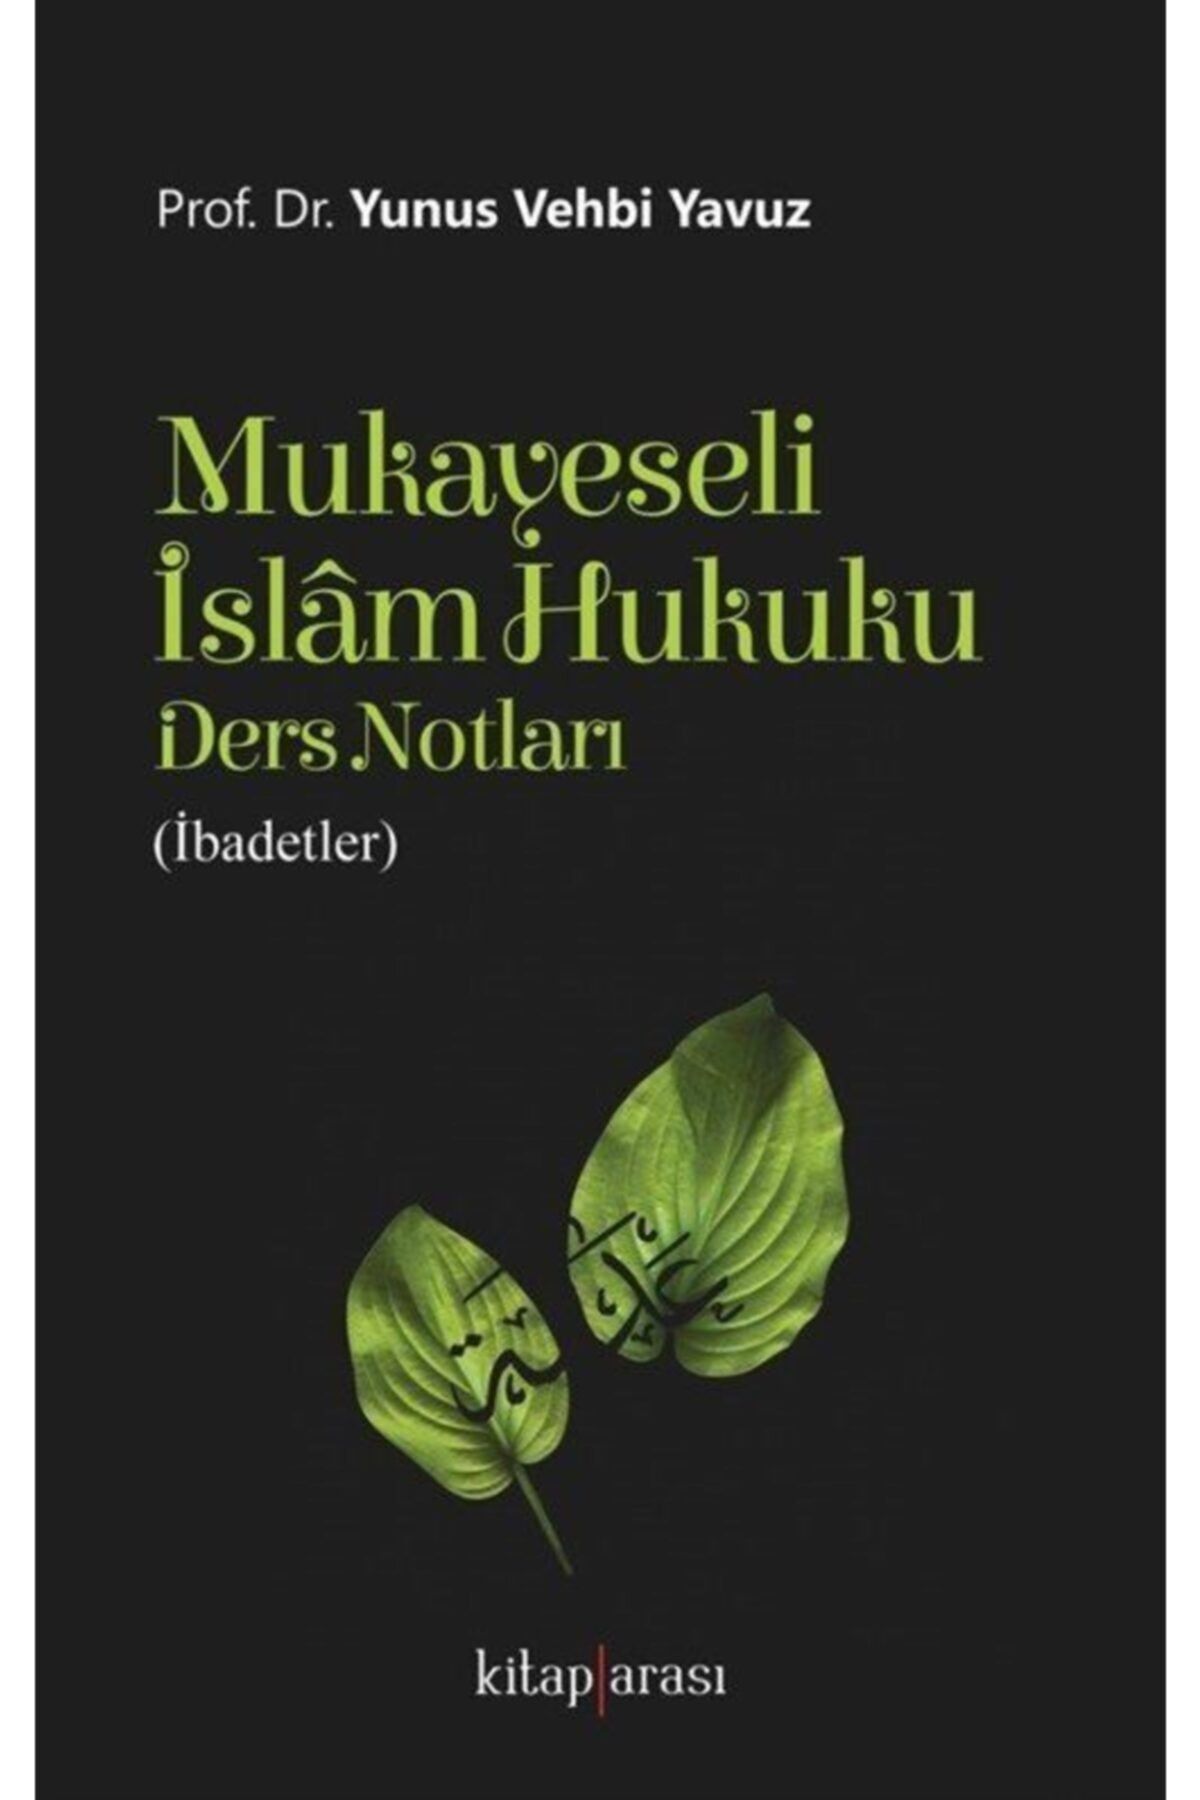 Kitap Arası Mukayeseli Islam Hukuku Ders Notları (ibadetler)